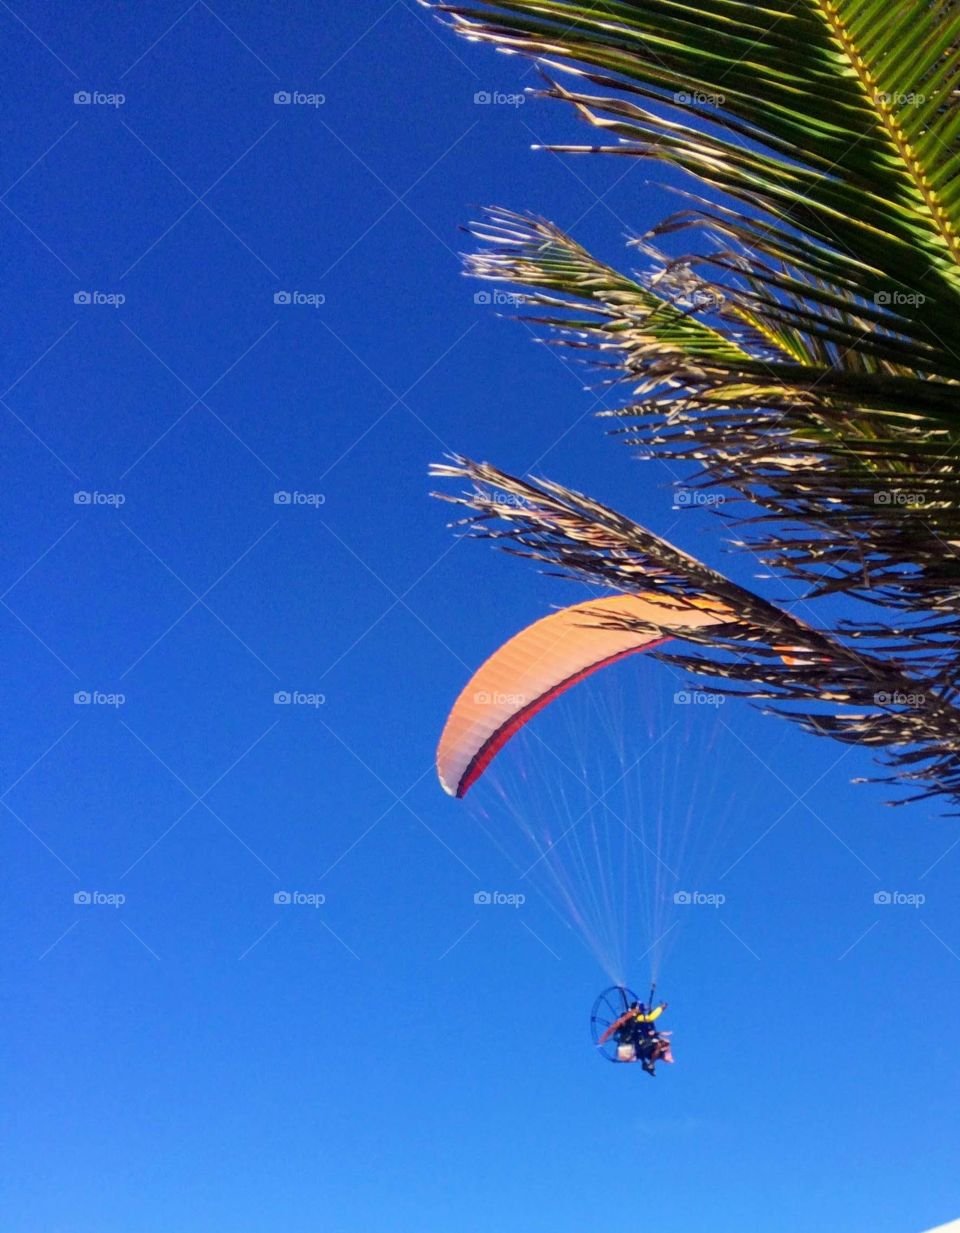 Orange paraglider on blue sky